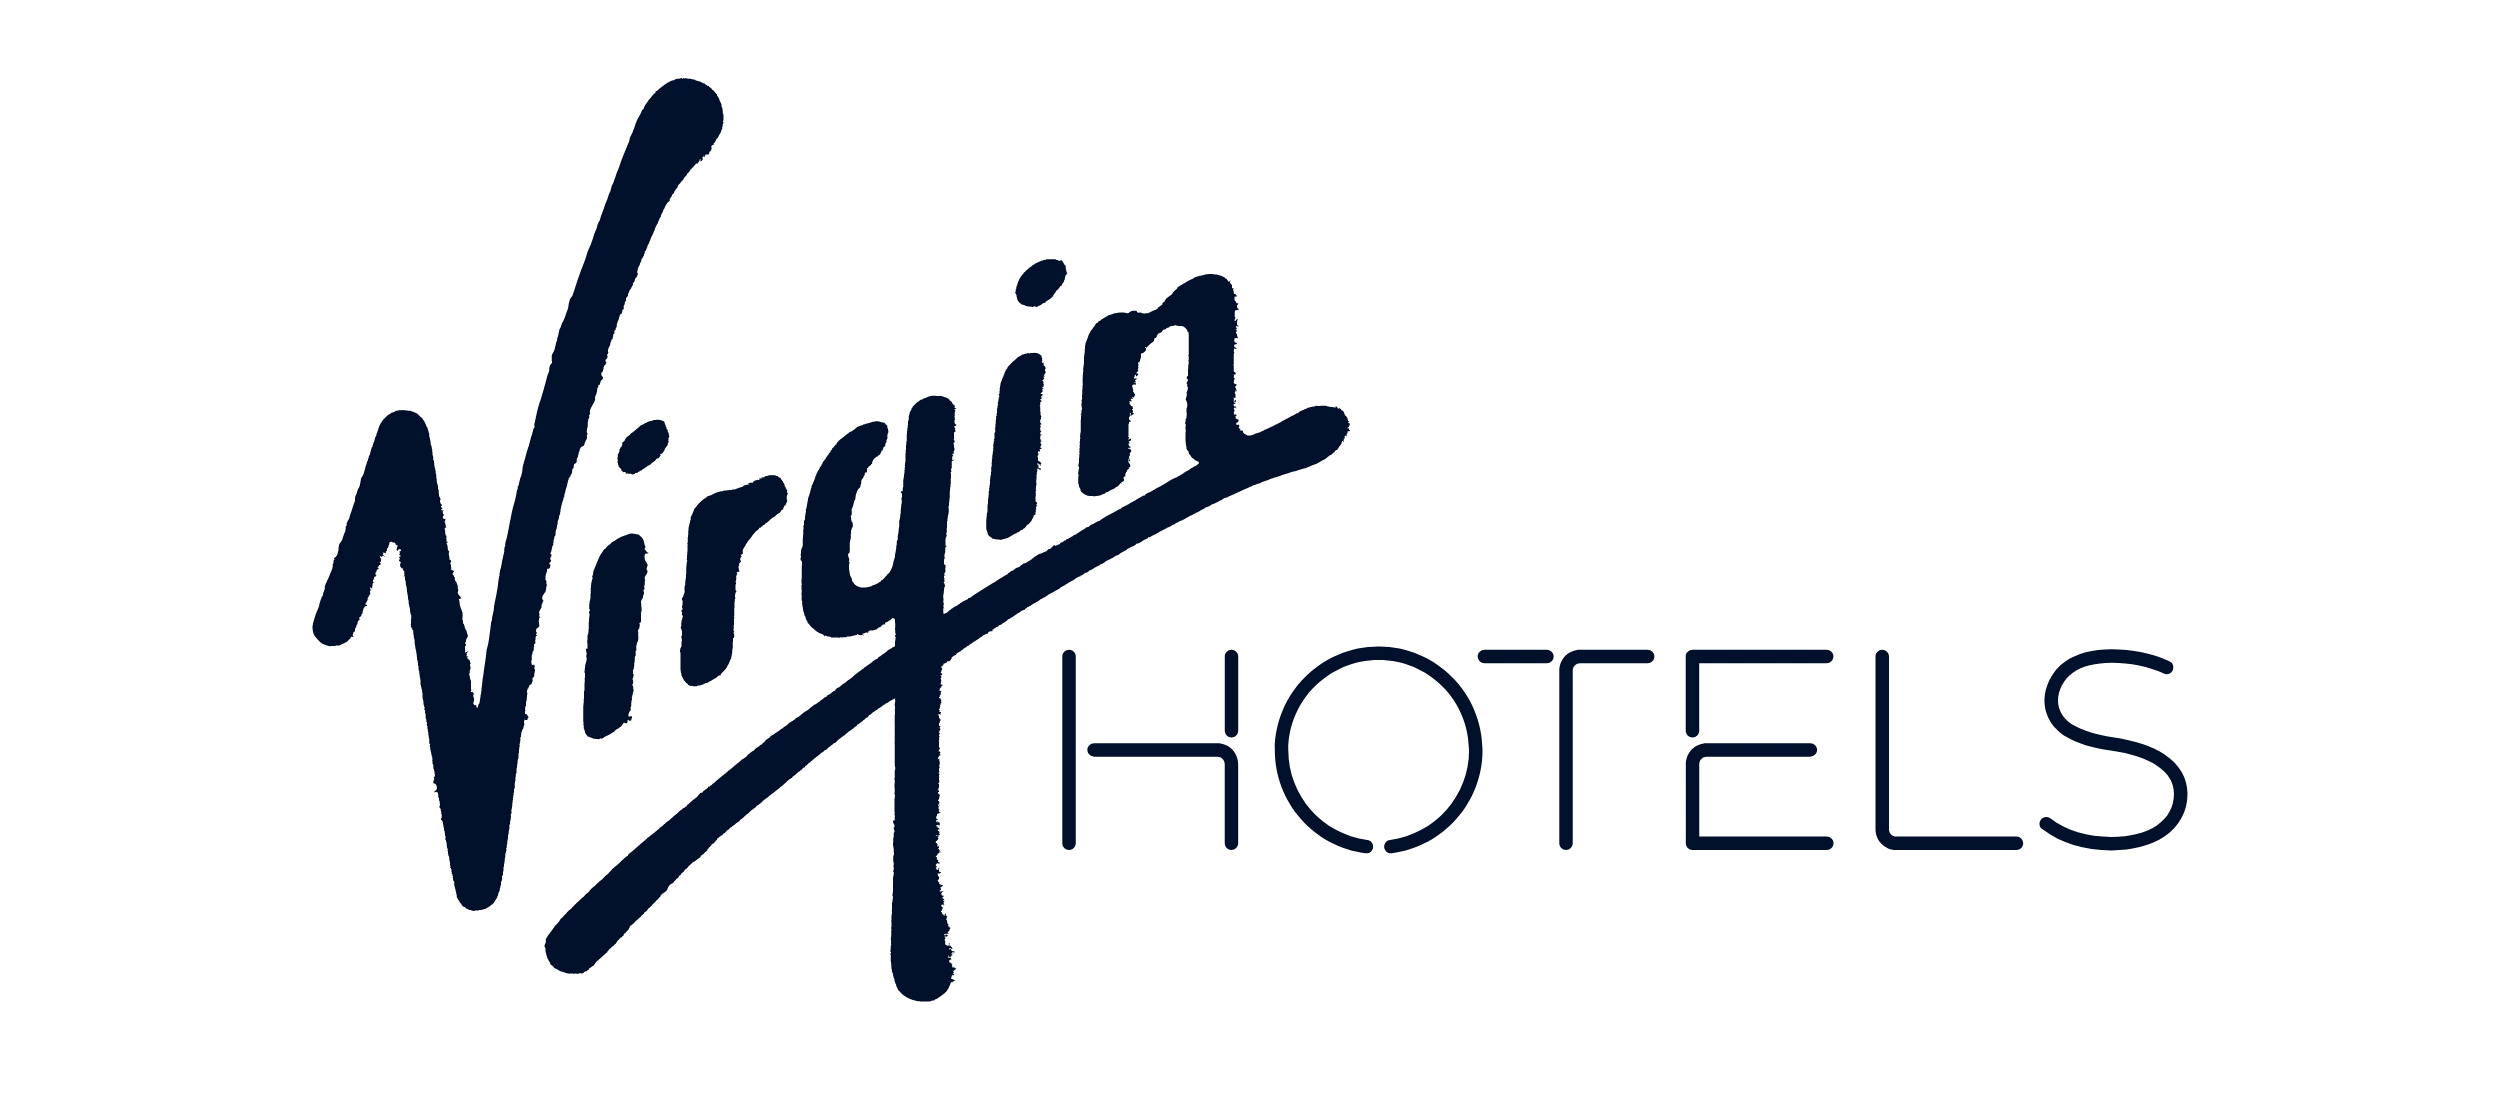 Virgin hotels